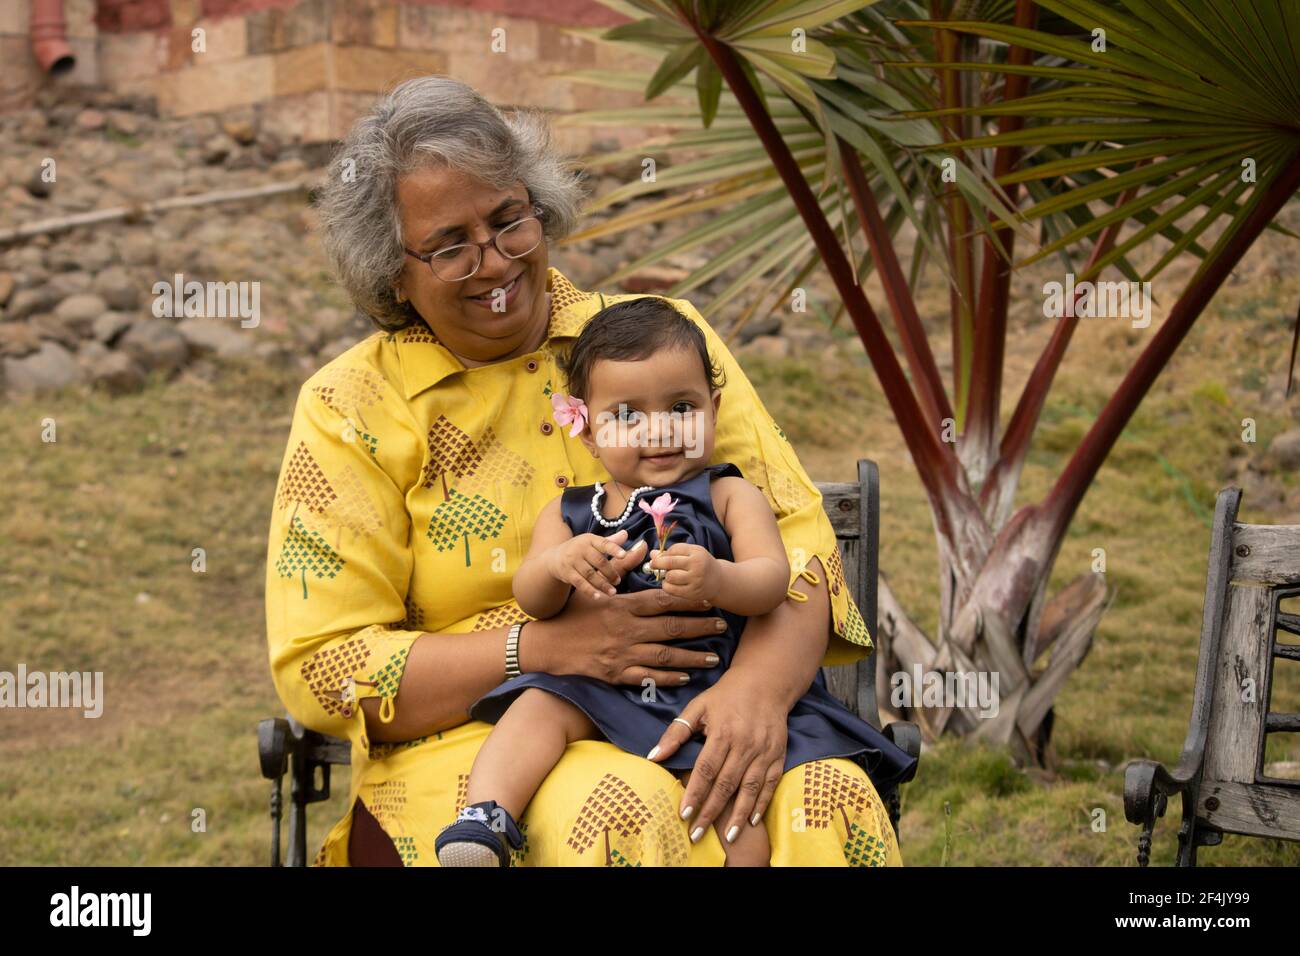 Des moments heureux avec une grande-mère, une femme indienne ou asiatique passe du temps de qualité avec sa petite fille dans le jardin. Banque D'Images